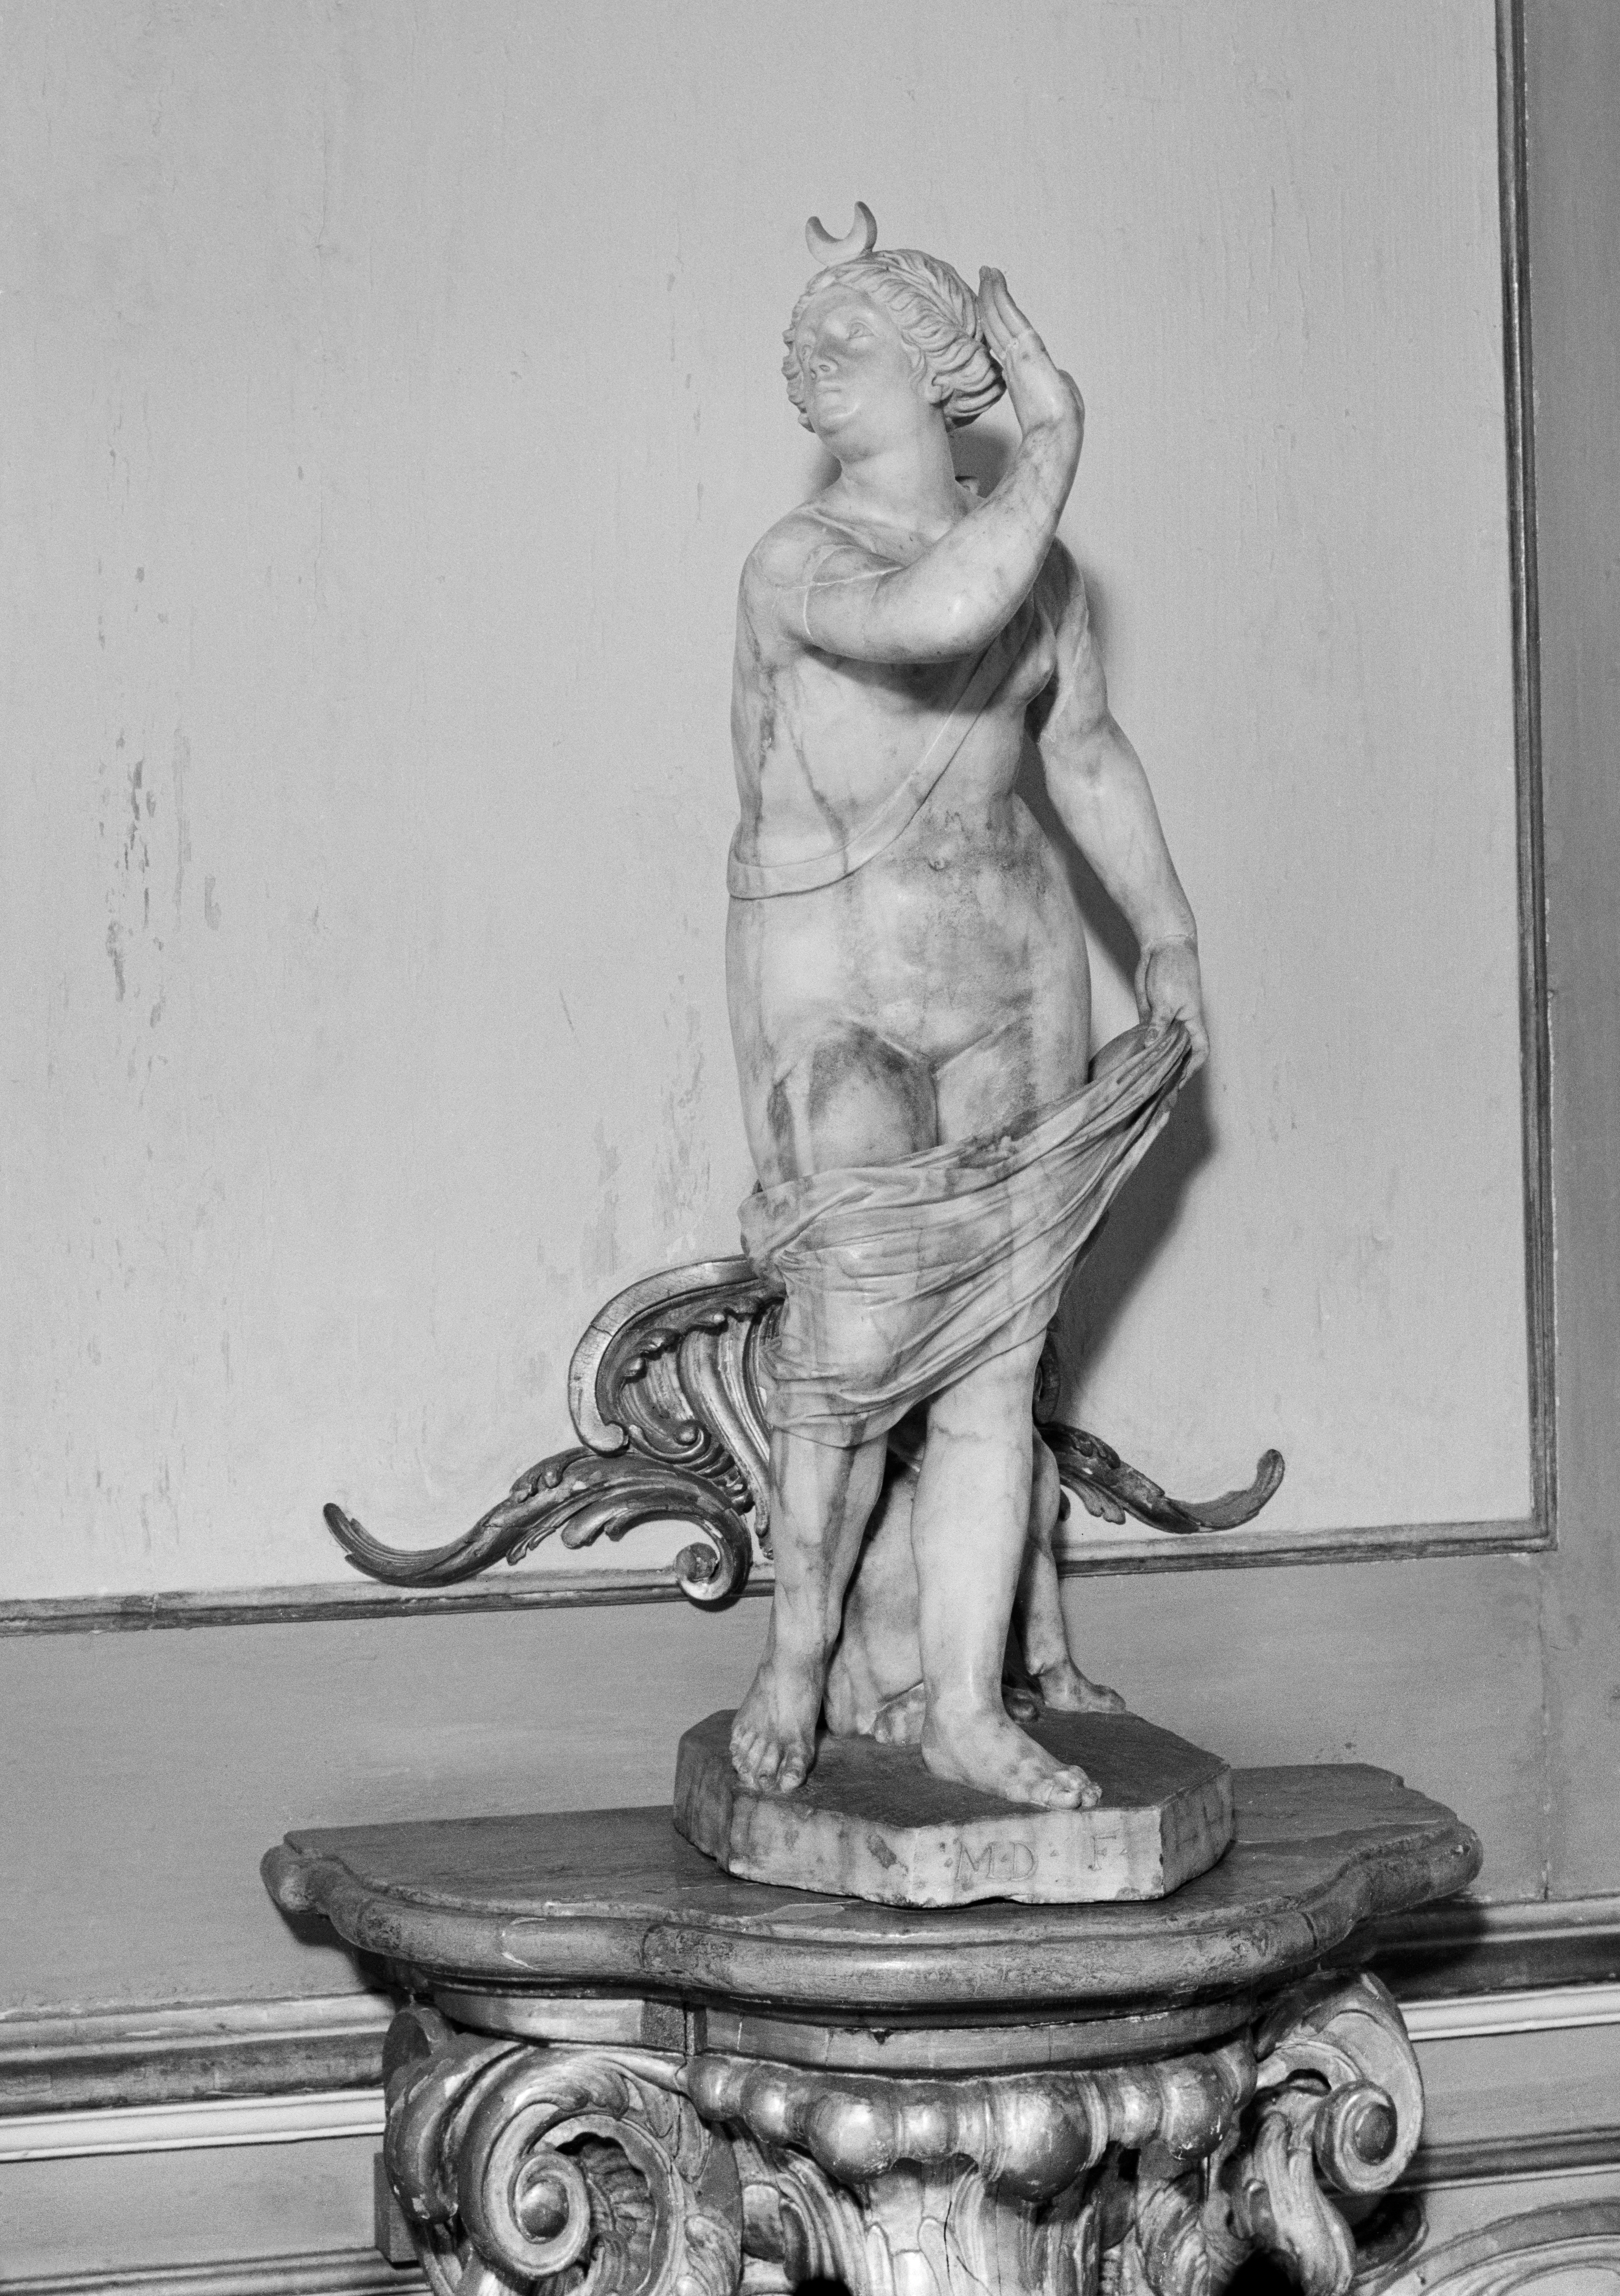 Döbel, Johann Michael [der Jüngere] [Bildhauer, 1635-1702]: Diana mit Hund, 2. Hälfte 17. Jahrhundert, Skulpt.slg. 116. (Stiftung Preußische Schlösser und Gärten Berlin-Brandenburg CC BY-NC-SA)